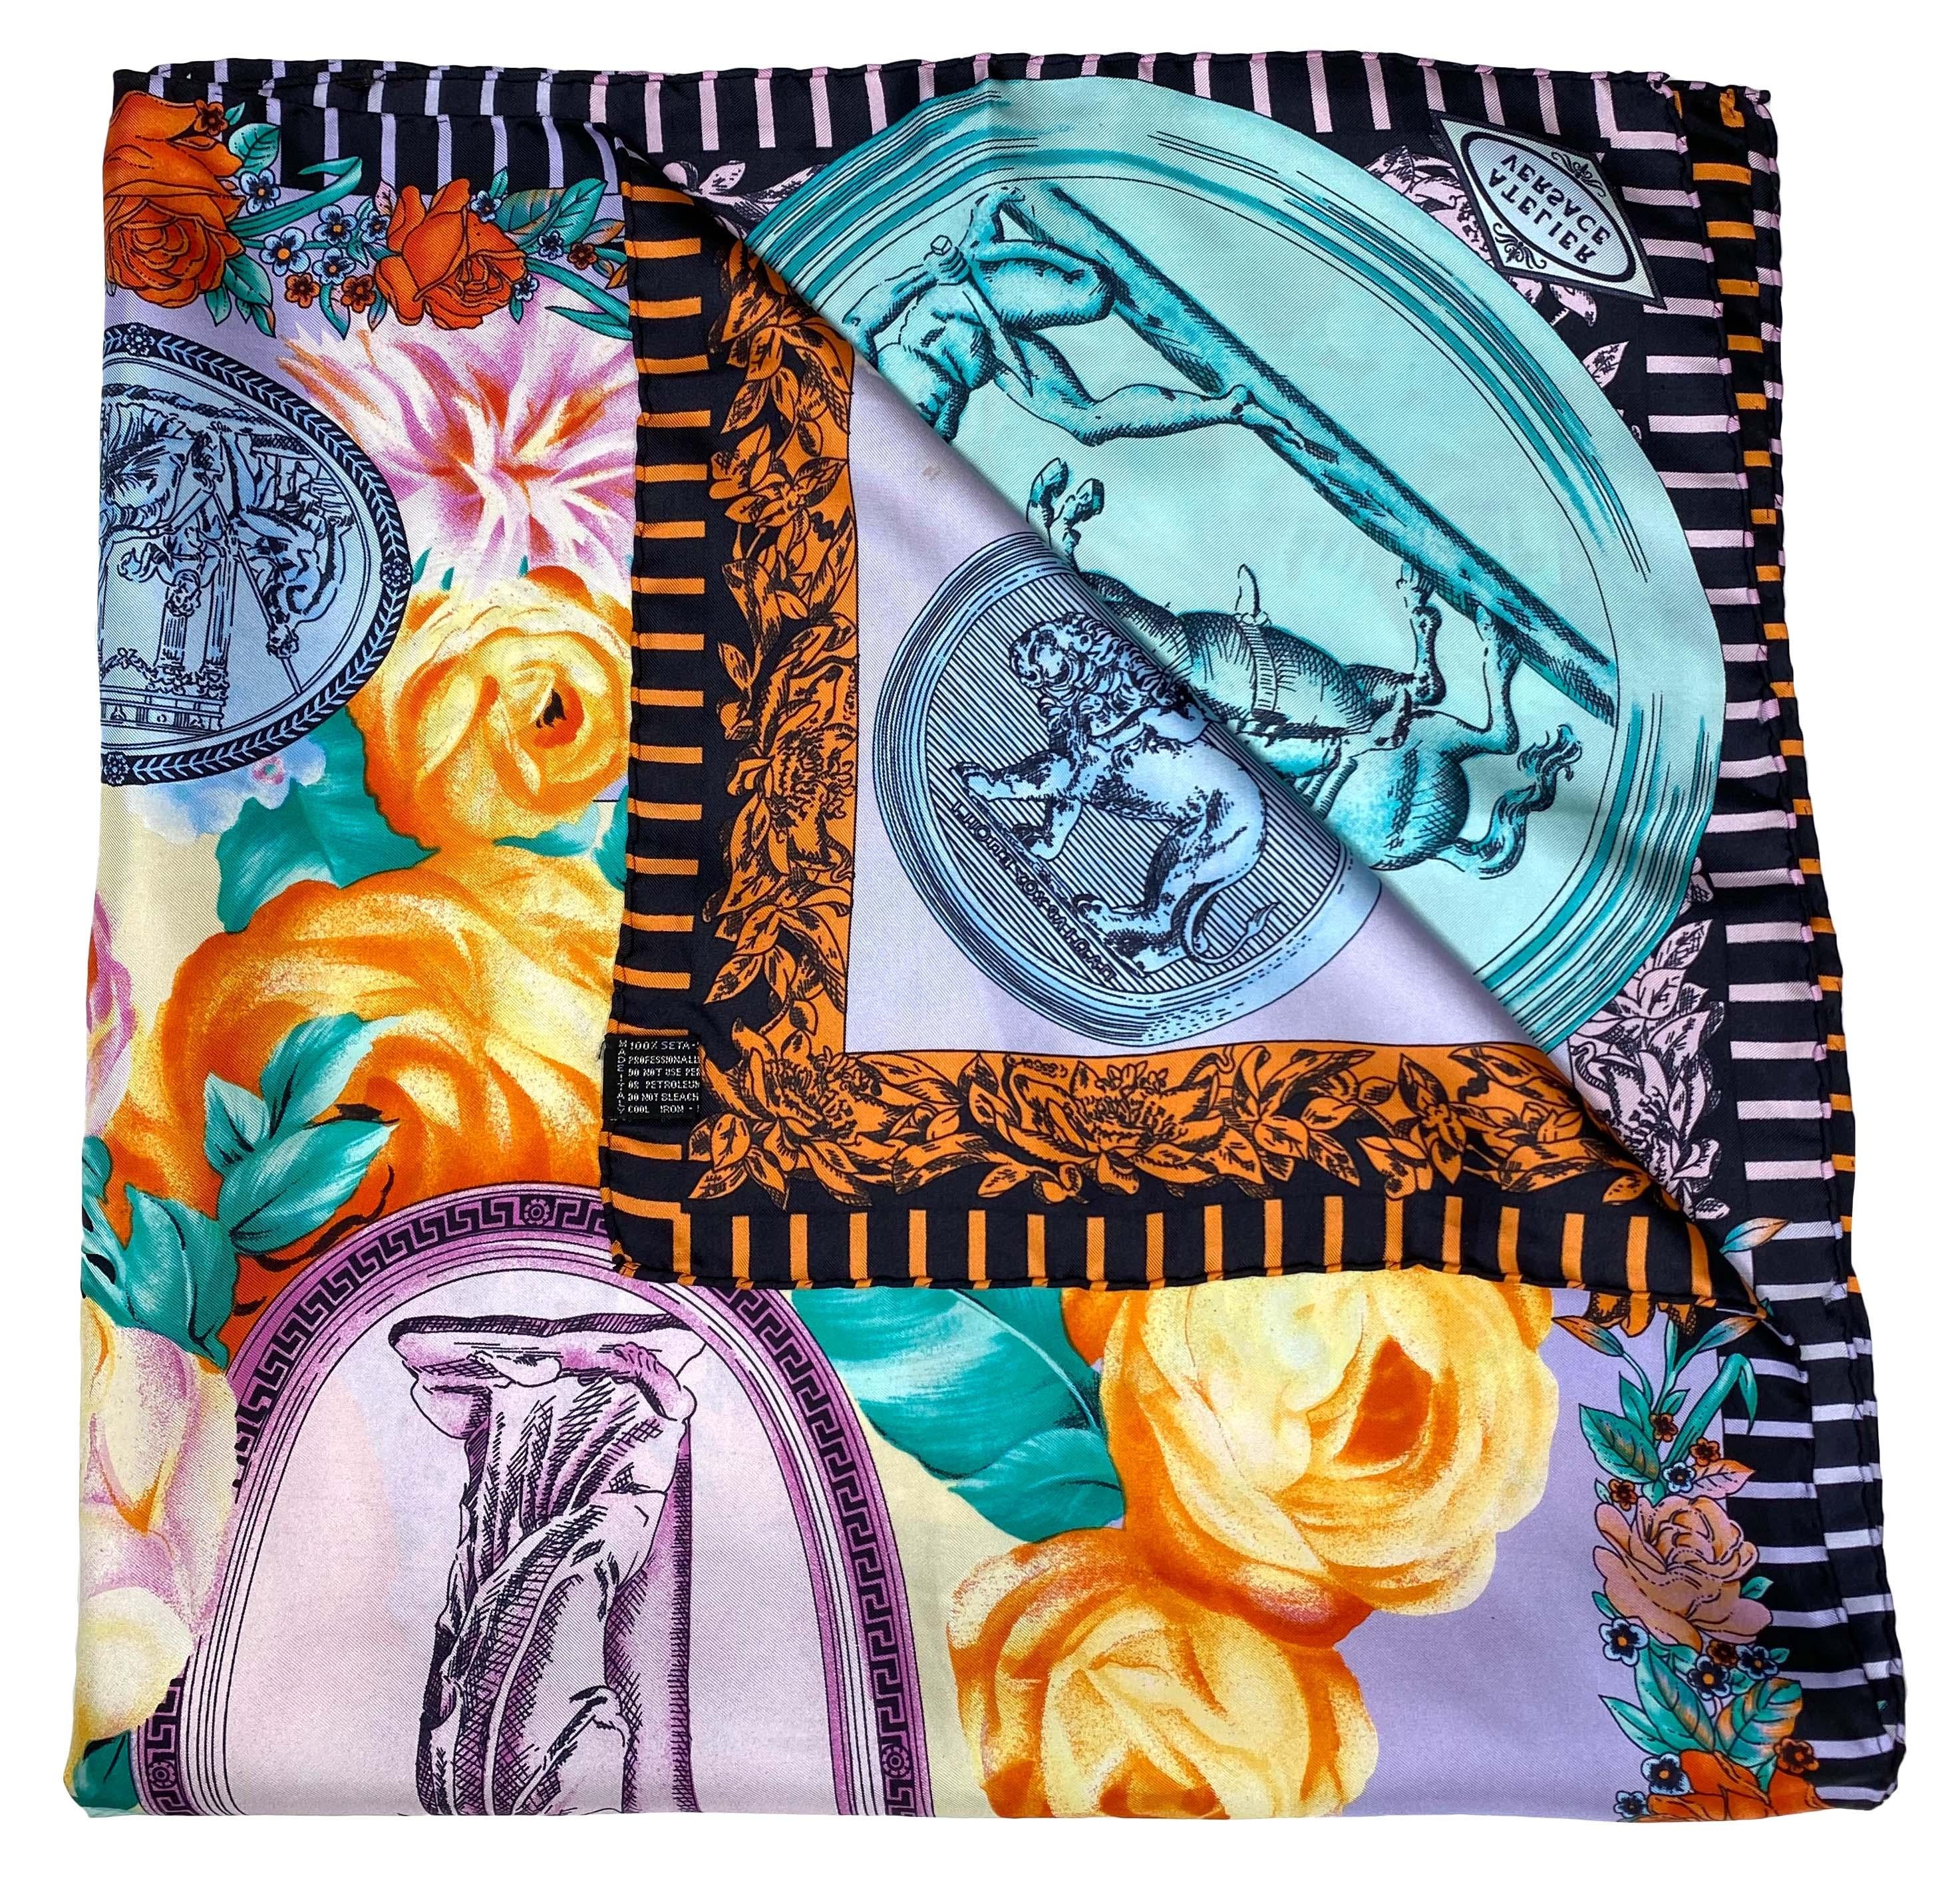 Wir präsentieren einen wunderschönen quadratischen Seidenschal im Barockstil von Atelier Versace, entworfen von Gianni Versace. Dieser Schal zeigt pastellfarbene griechisch-römische Münzen mit antiken geschnitzten Szenen und bunten Blumen. 
